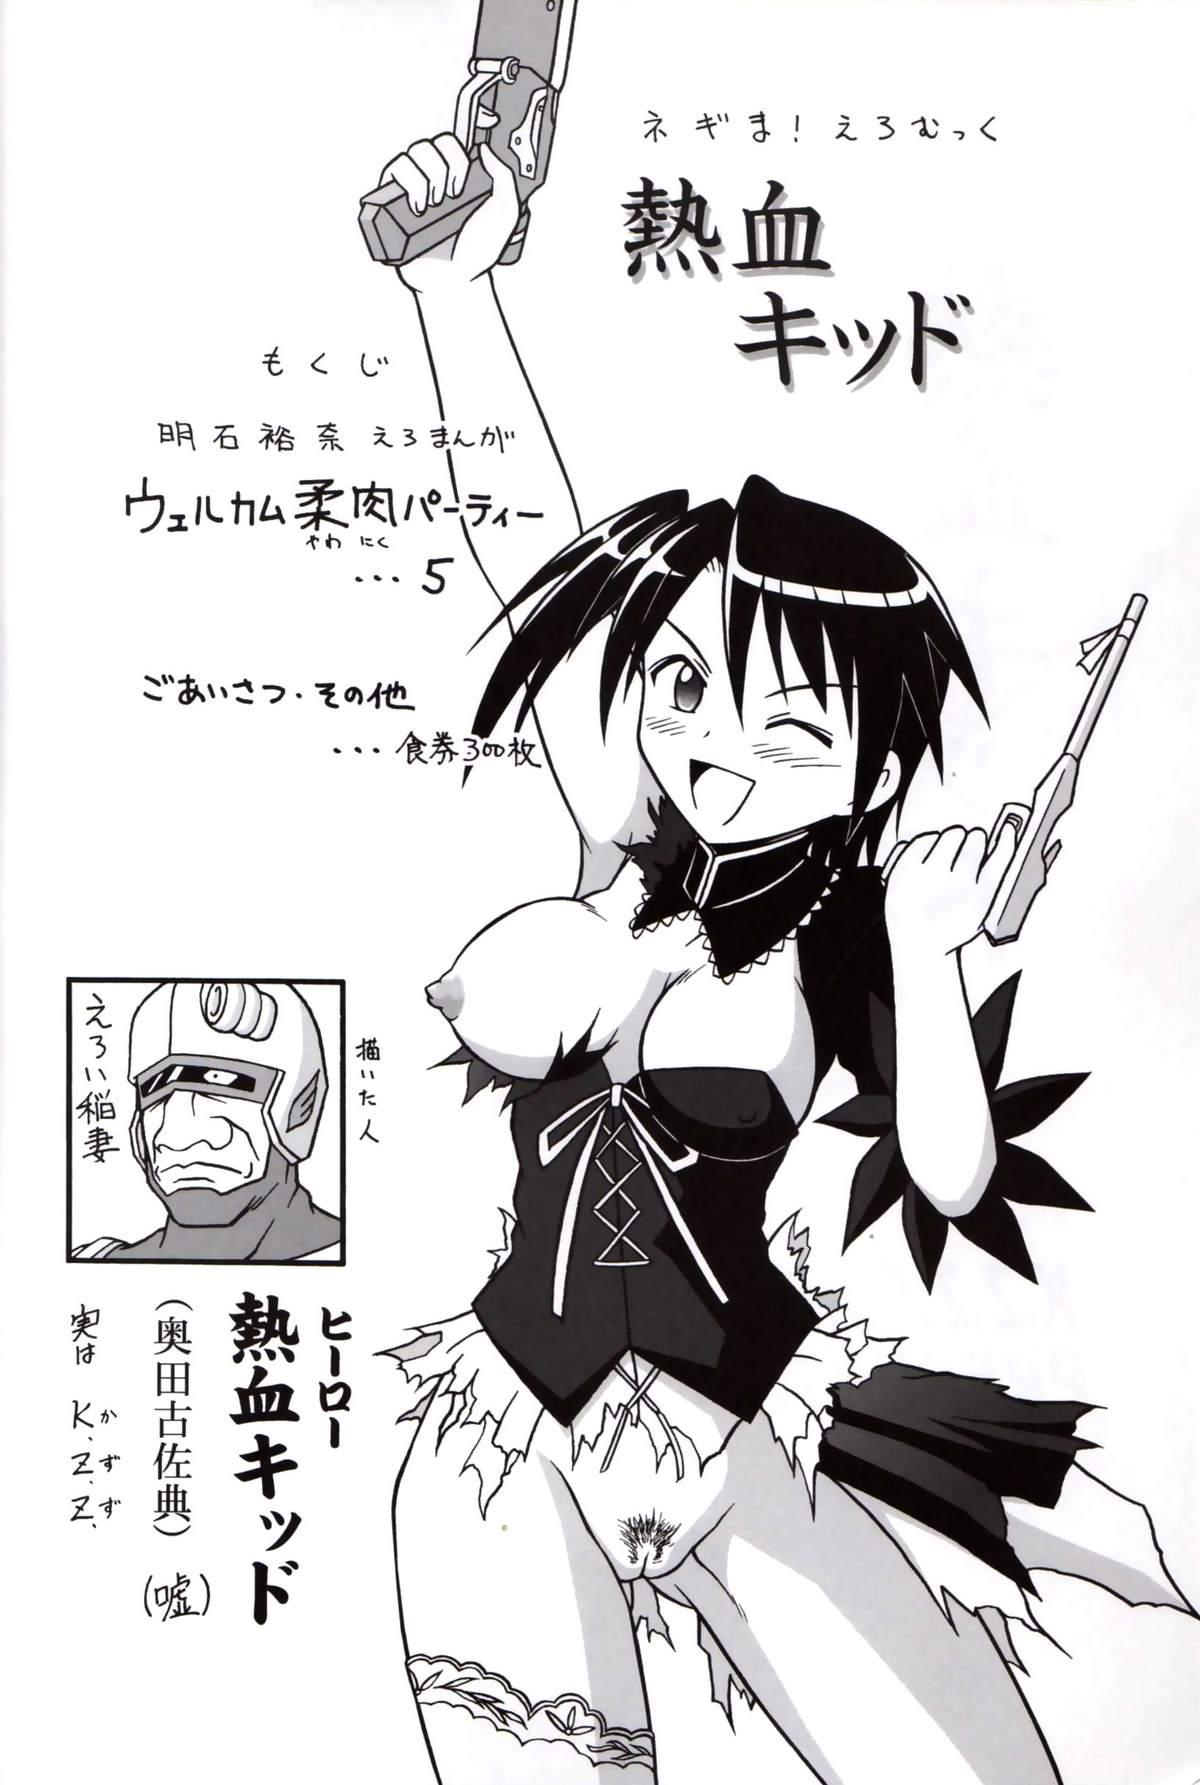 Novinho Nekketsu Kid - Mahou sensei negima Soapy - Page 3